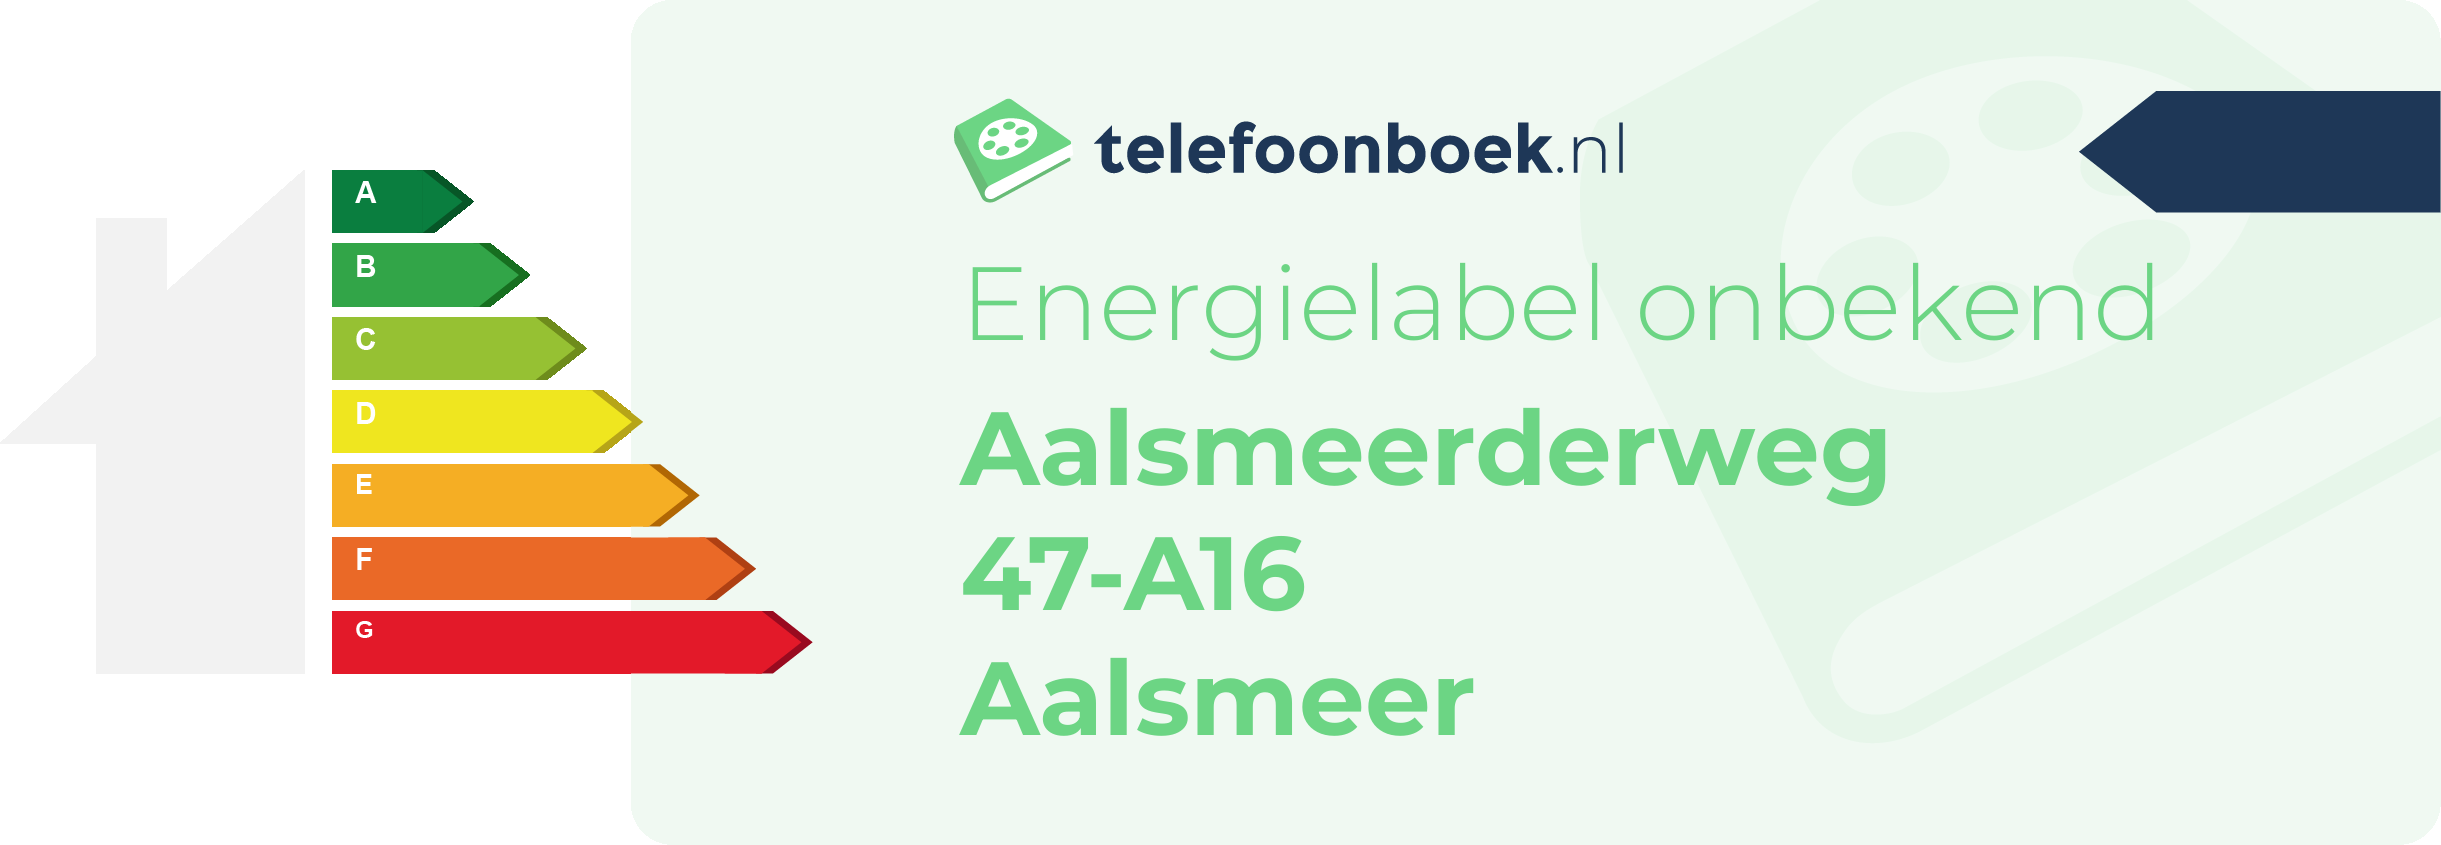 Energielabel Aalsmeerderweg 47-A16 Aalsmeer